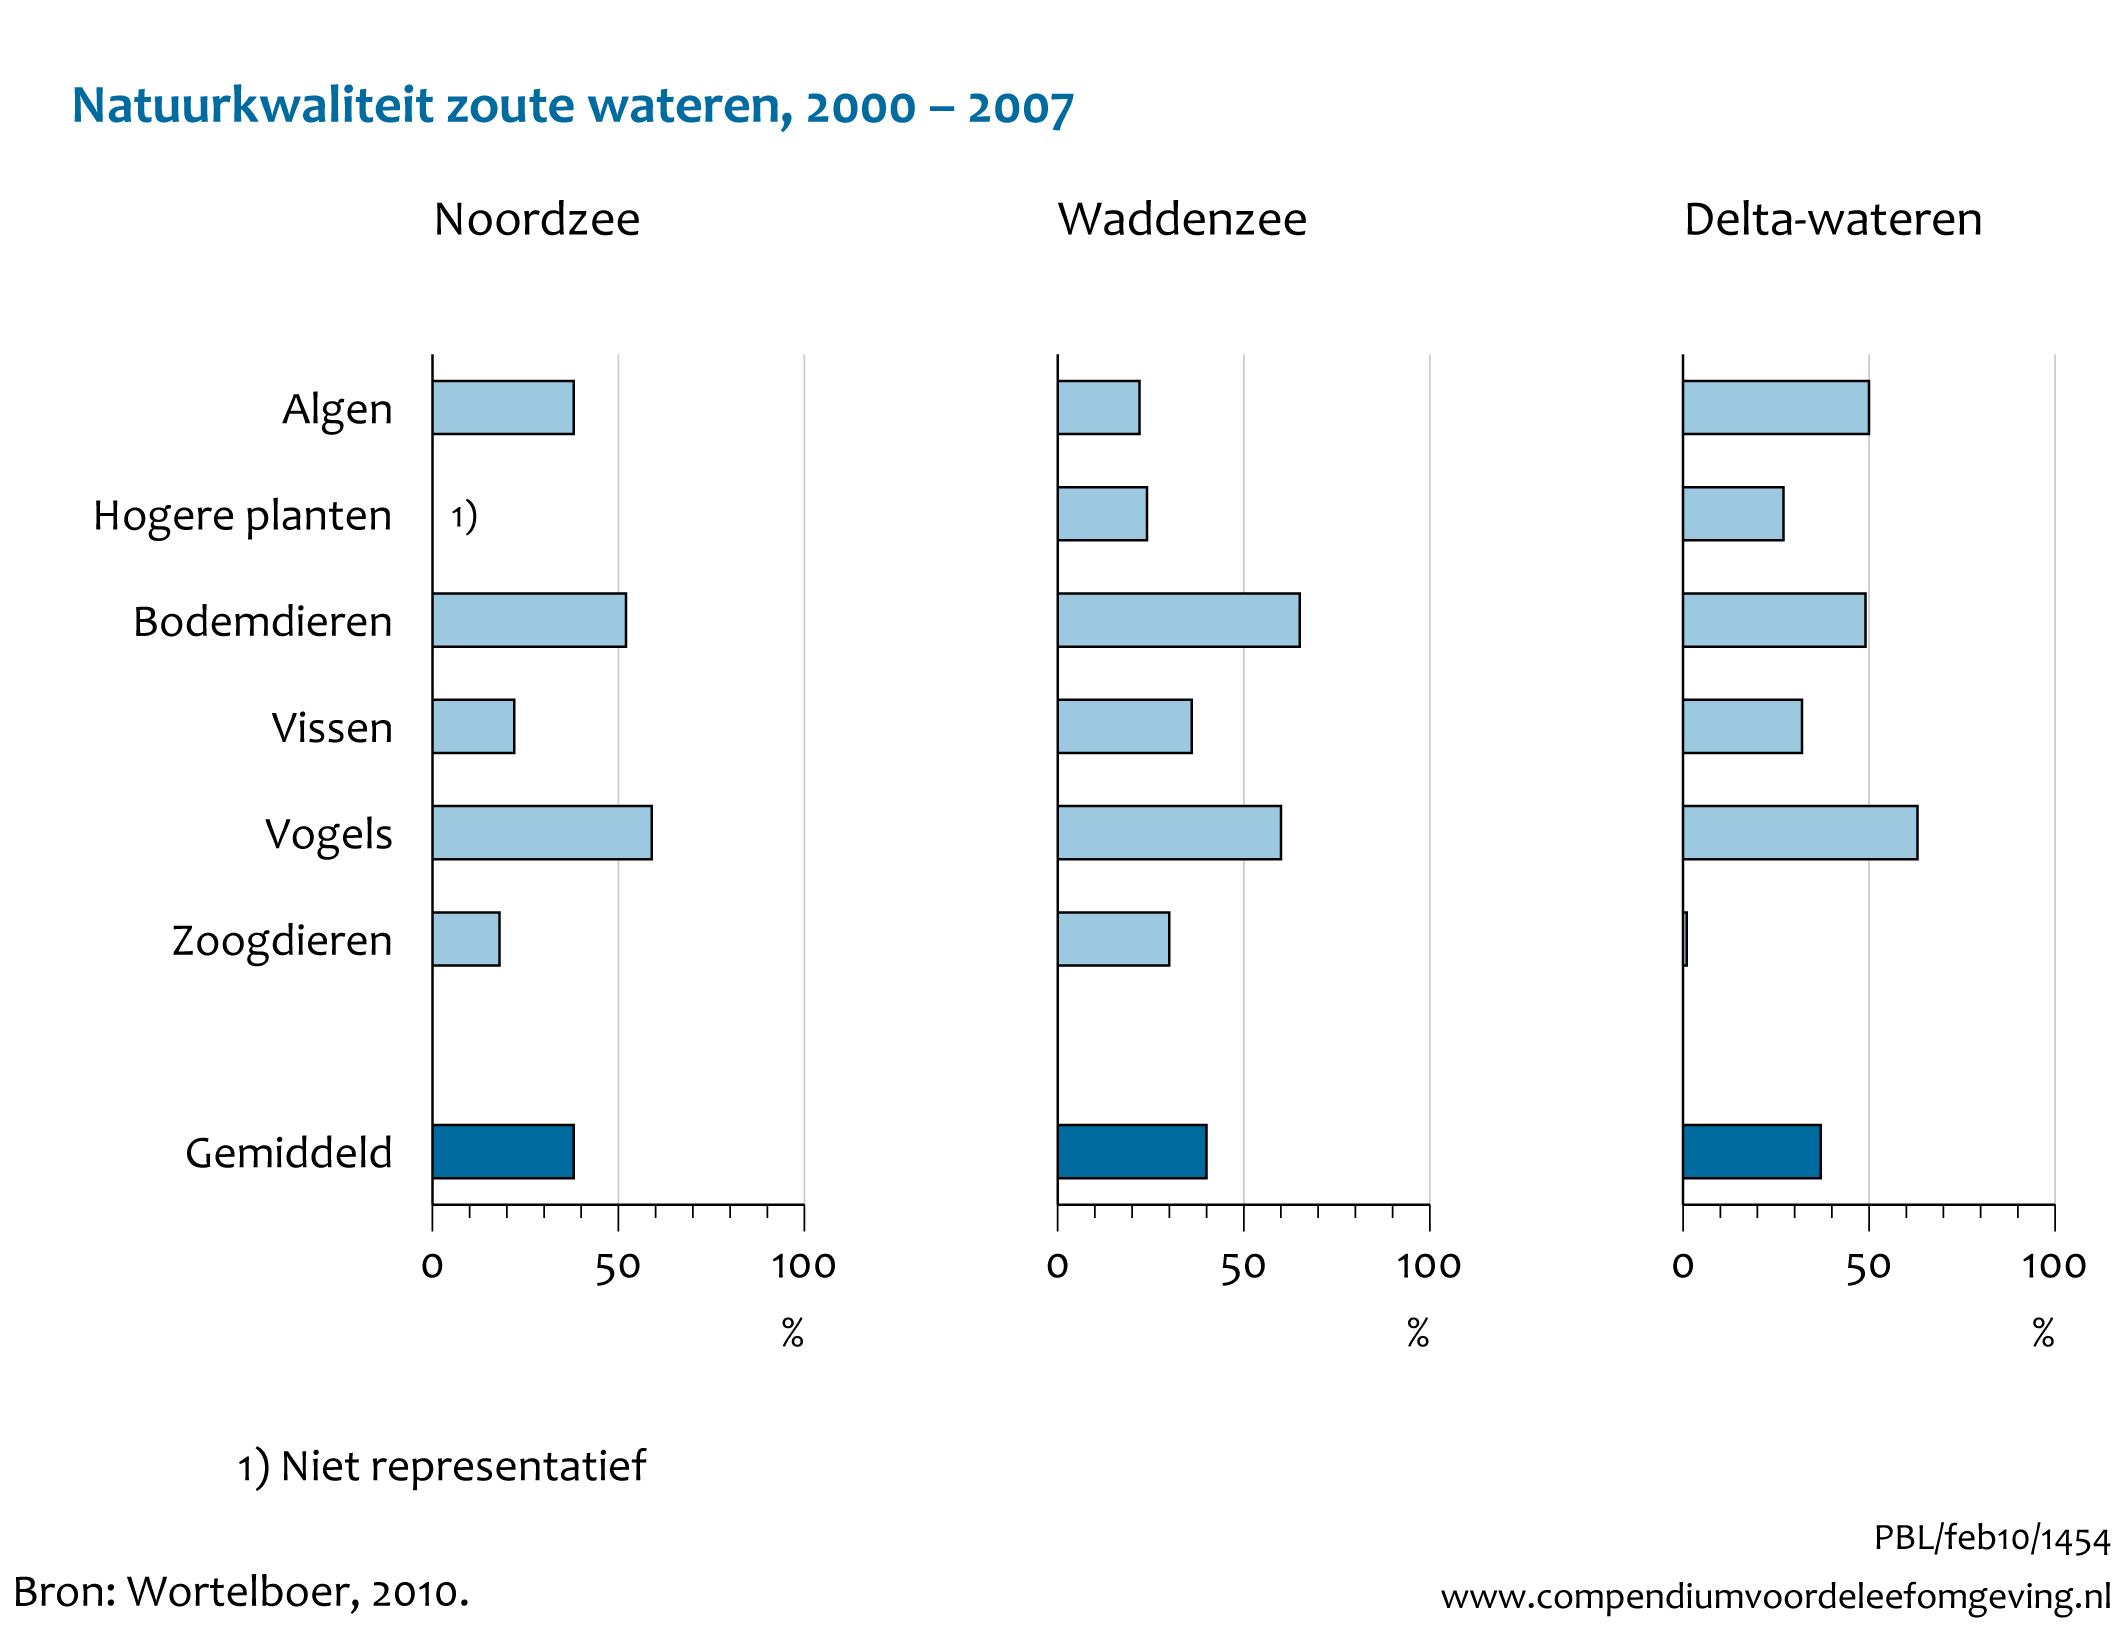 Figuur Natuurkwaliteit zoute wateren 2000-2007. In de rest van de tekst wordt deze figuur uitgebreider uitgelegd.